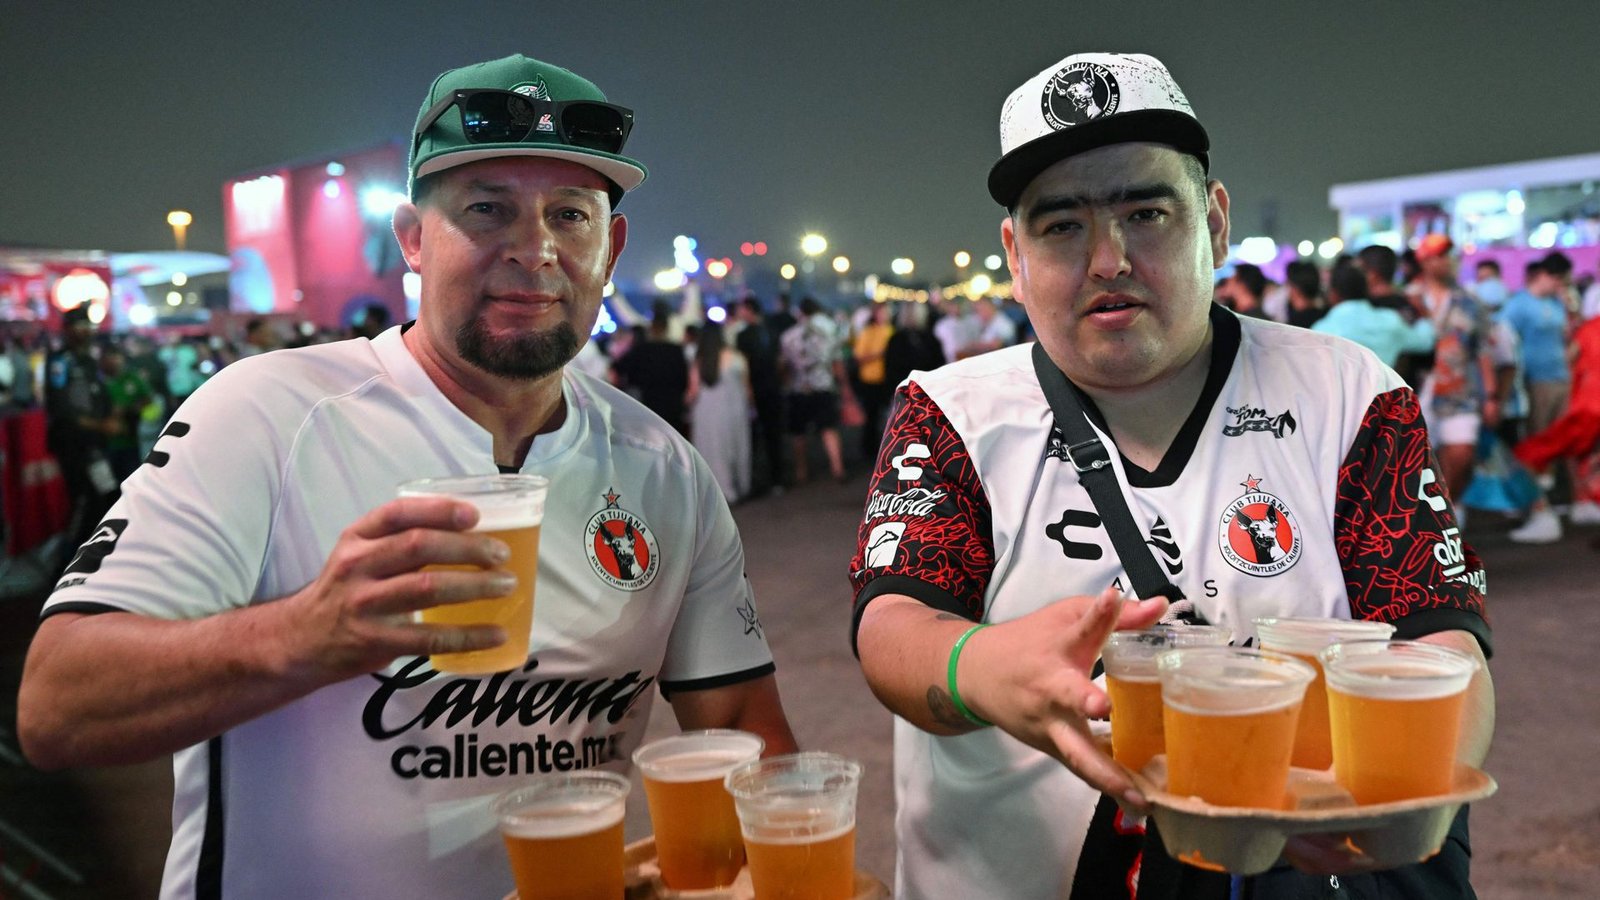 Bier gibt es für Fans bei der WM in Katar schon zu trinken – allerdings nur in abgegrenzten Bereichen und nicht in den Stadien.Foto: AFP